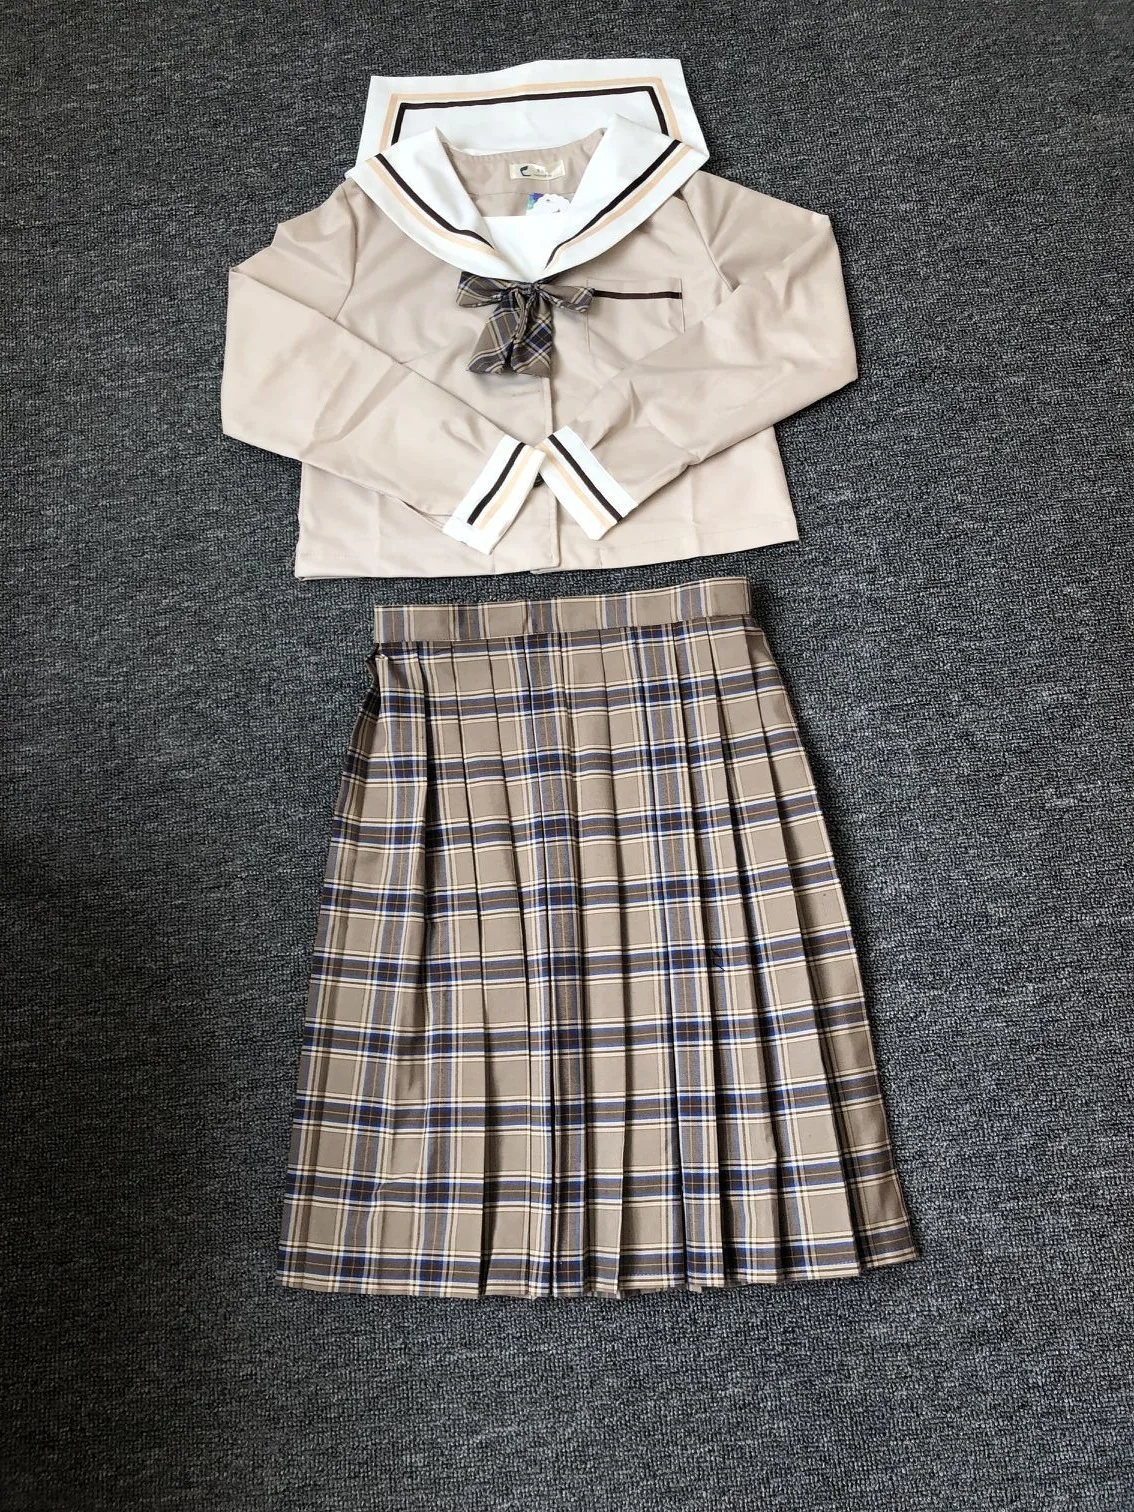 Школьные платья японская форма для средней школы для девочек Jk Униформа леди матросский костюм чай коричневый цвет клетчатая юбка в